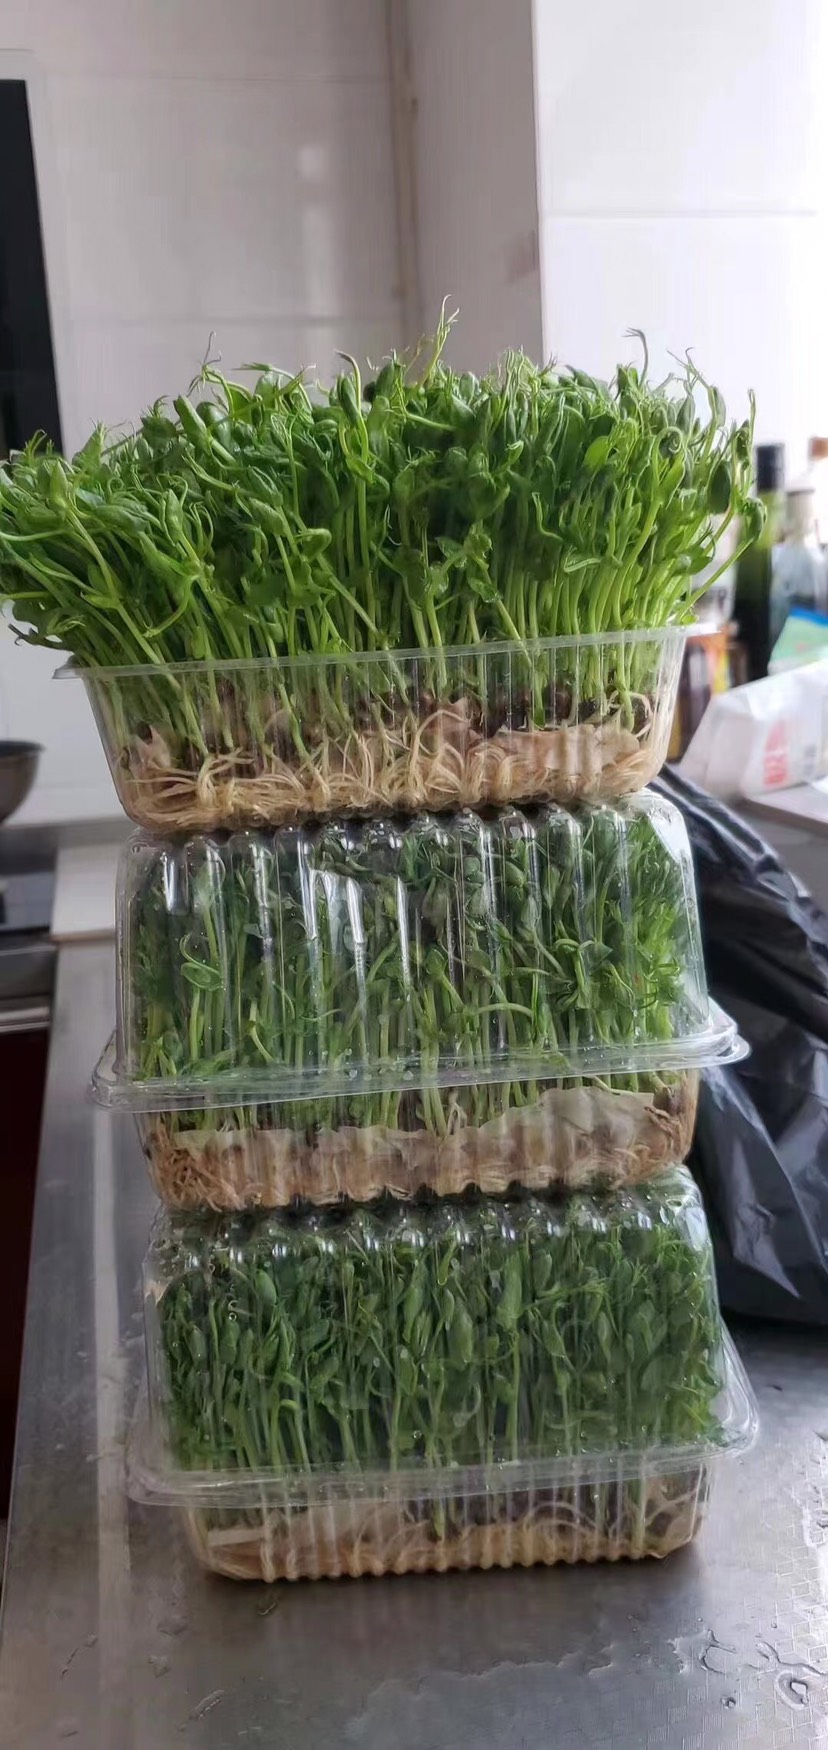 芽苗菜种植盒22×17×15豌豆苗种植盒带盖底部带漏水孔